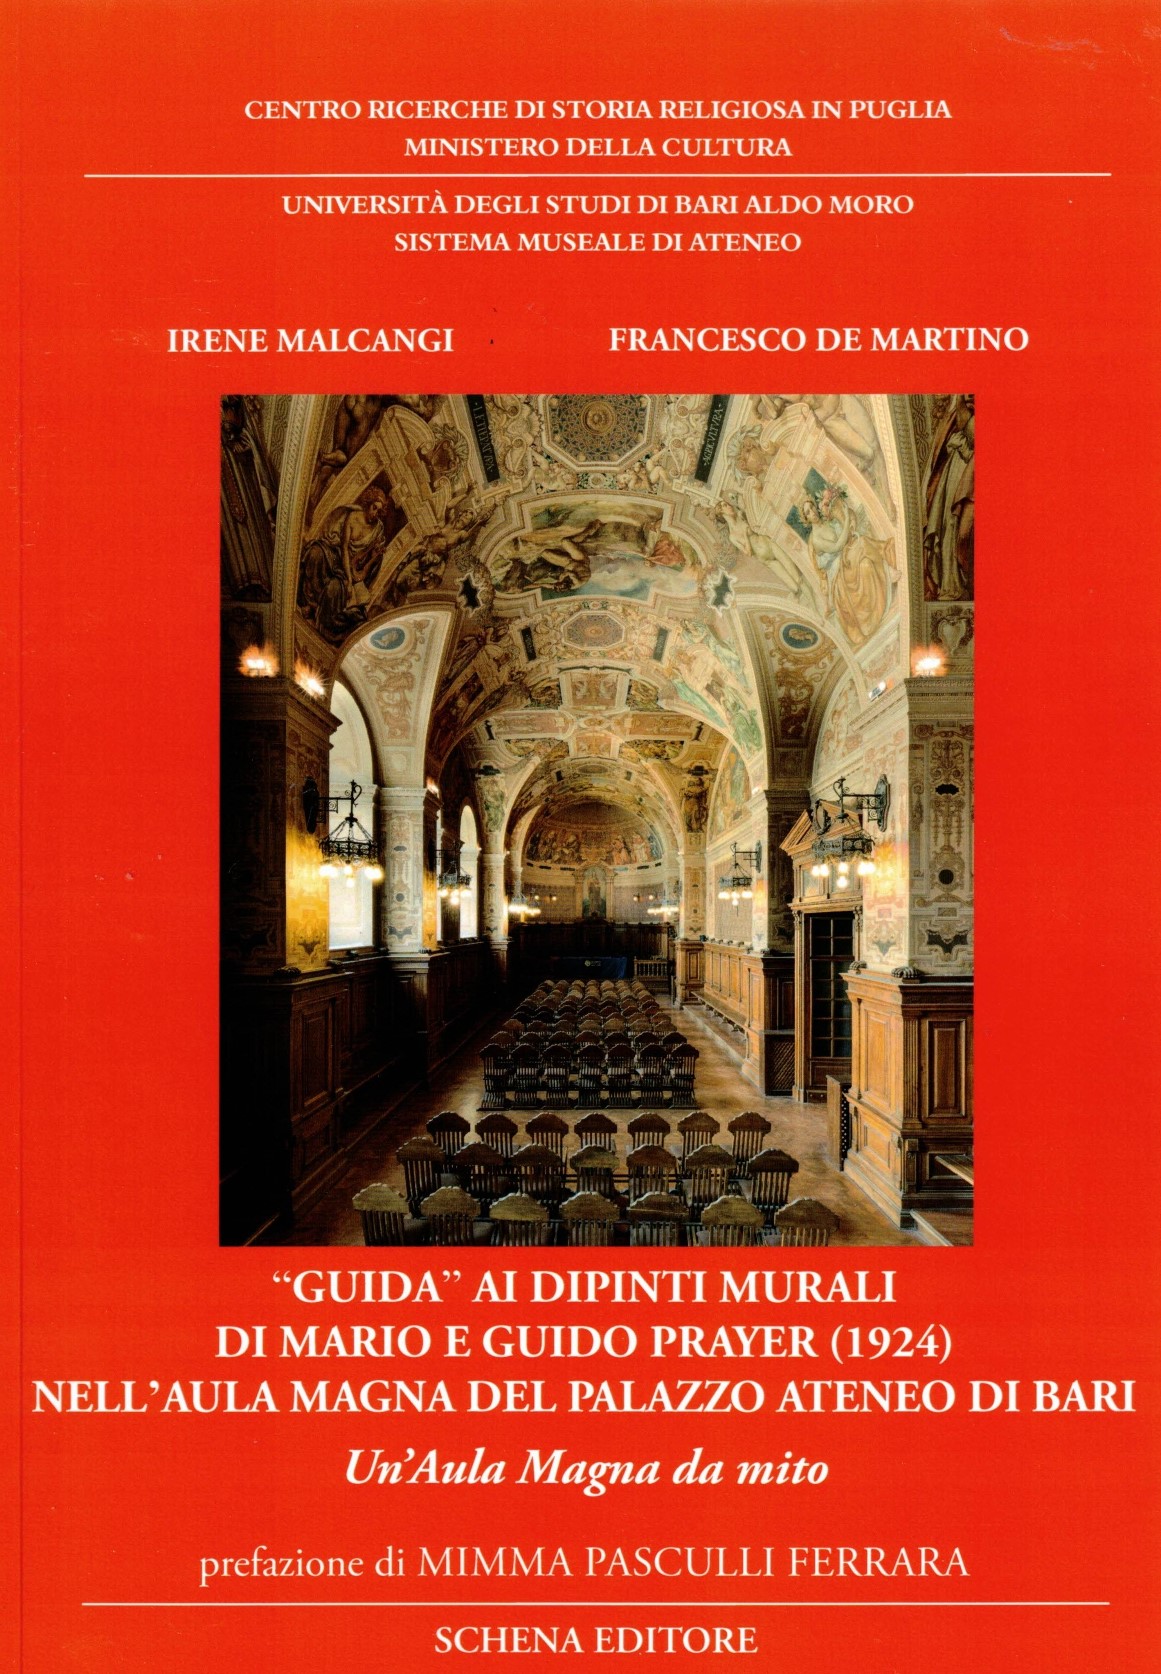 Copertina del libro 'Guida' ai dipinti murali di Mario e Guido Prayer (1924) nell'Aula Magna del Palazzo Ateneo di Bari.jpg